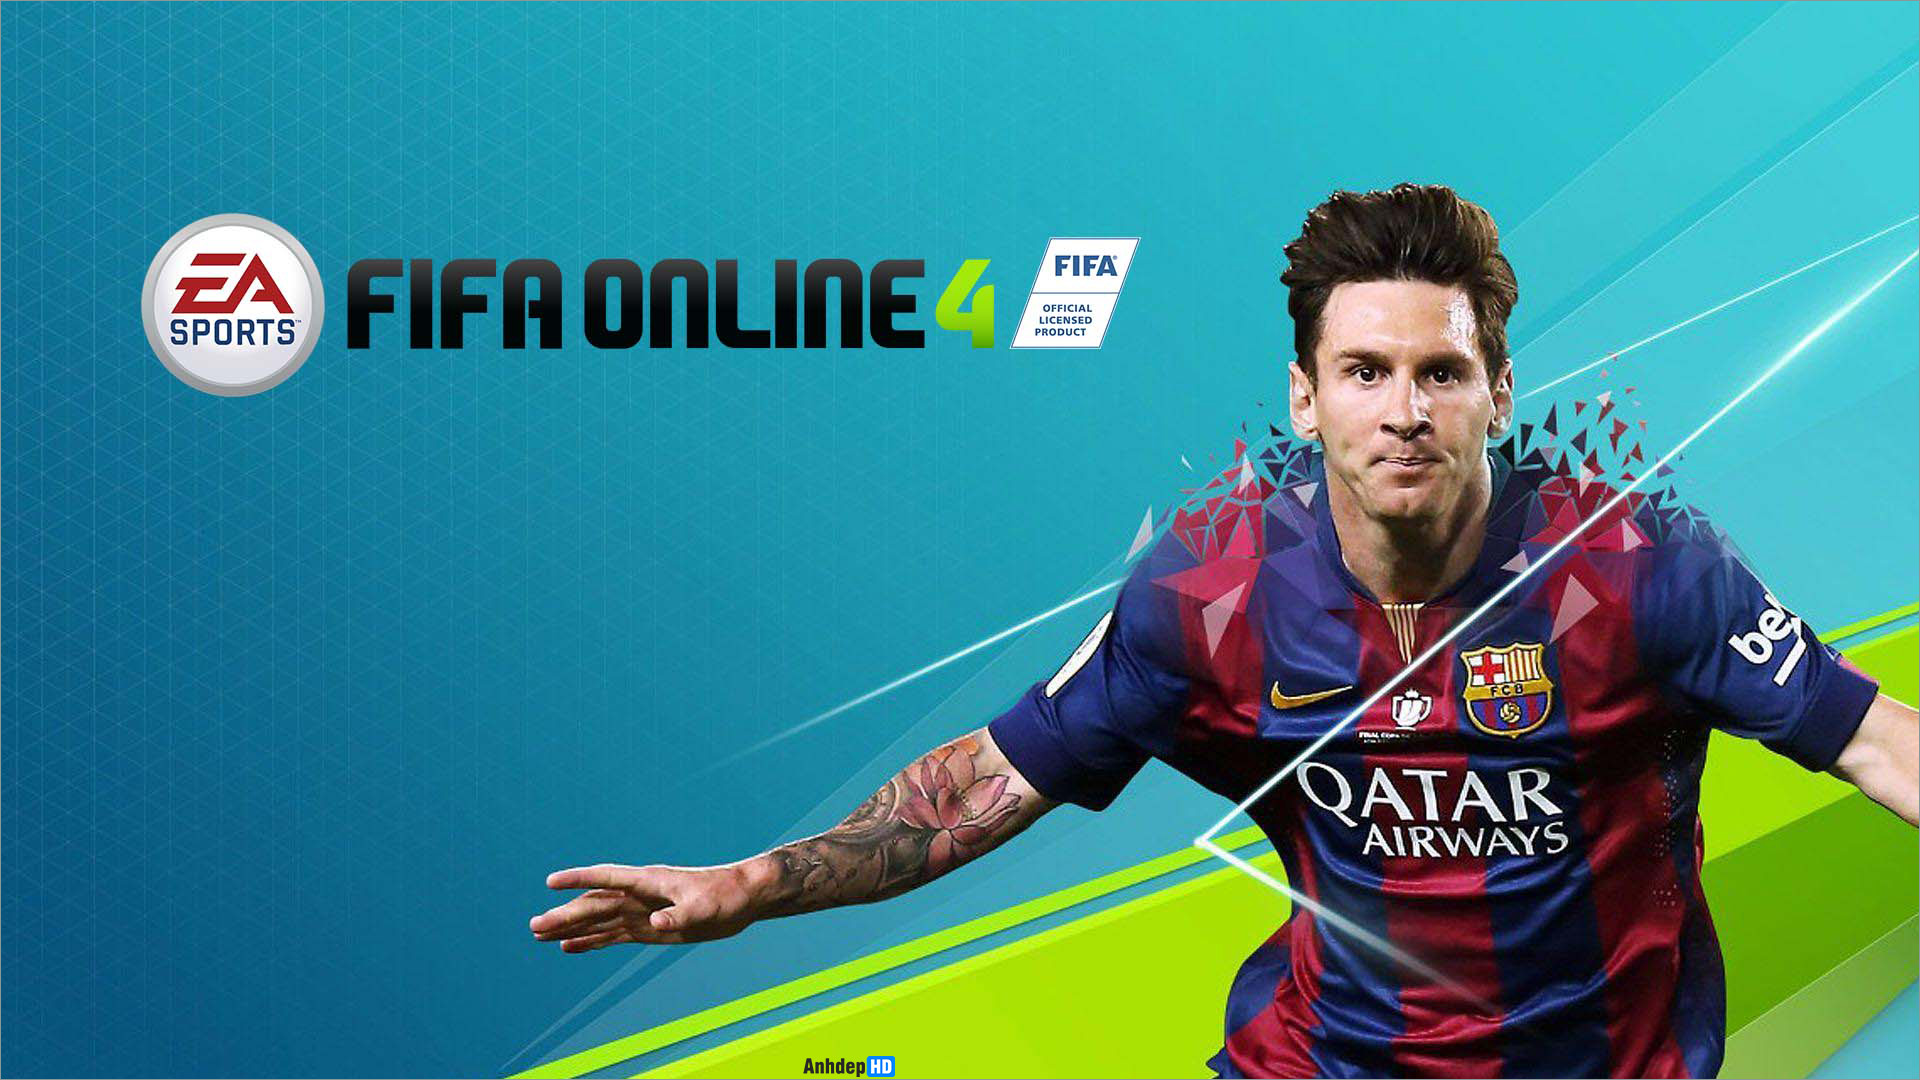 Hình Ảnh Fifa Mobile Online 3D: Tham gia vào thế giới của FIFA Mobile Online 3D với hàng trăm cầu thủ và đội bóng sẵn sàng để thi đấu. Cùng tìm hiểu thêm về trò chơi đầy thú vị này tại hình ảnh liên quan. Hãy để mình trở thành một công dân của FIFA Mobile Online 3D, khám phá và chinh phục các giải đấu lớn.